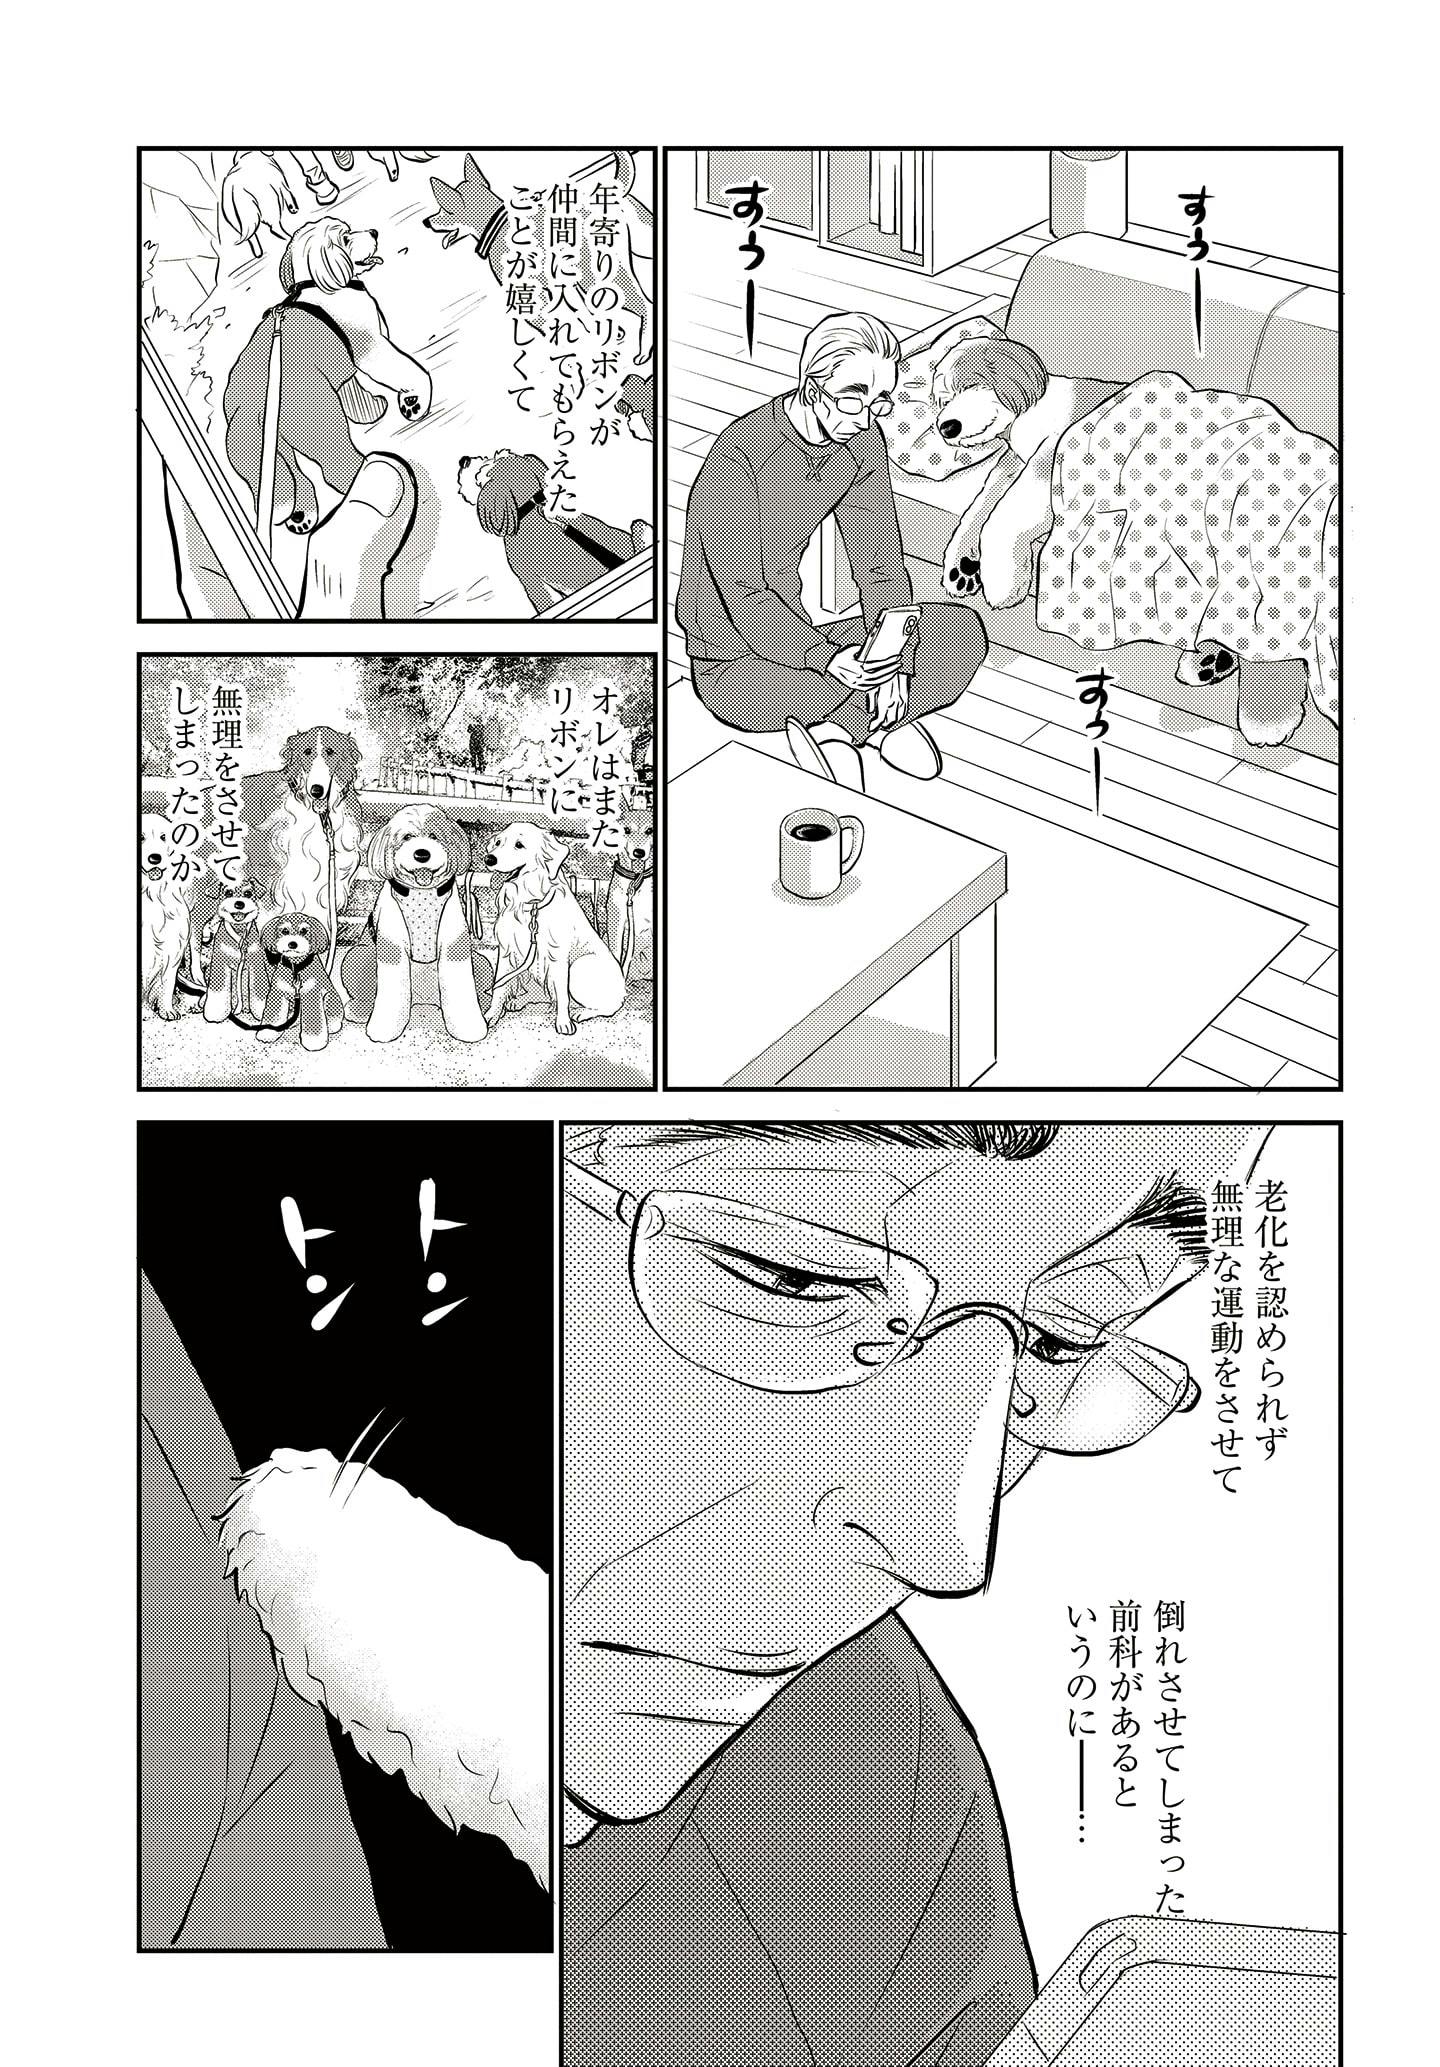 ドッグトレーニング漫画『DOG SIGNAL』34話目　3/4